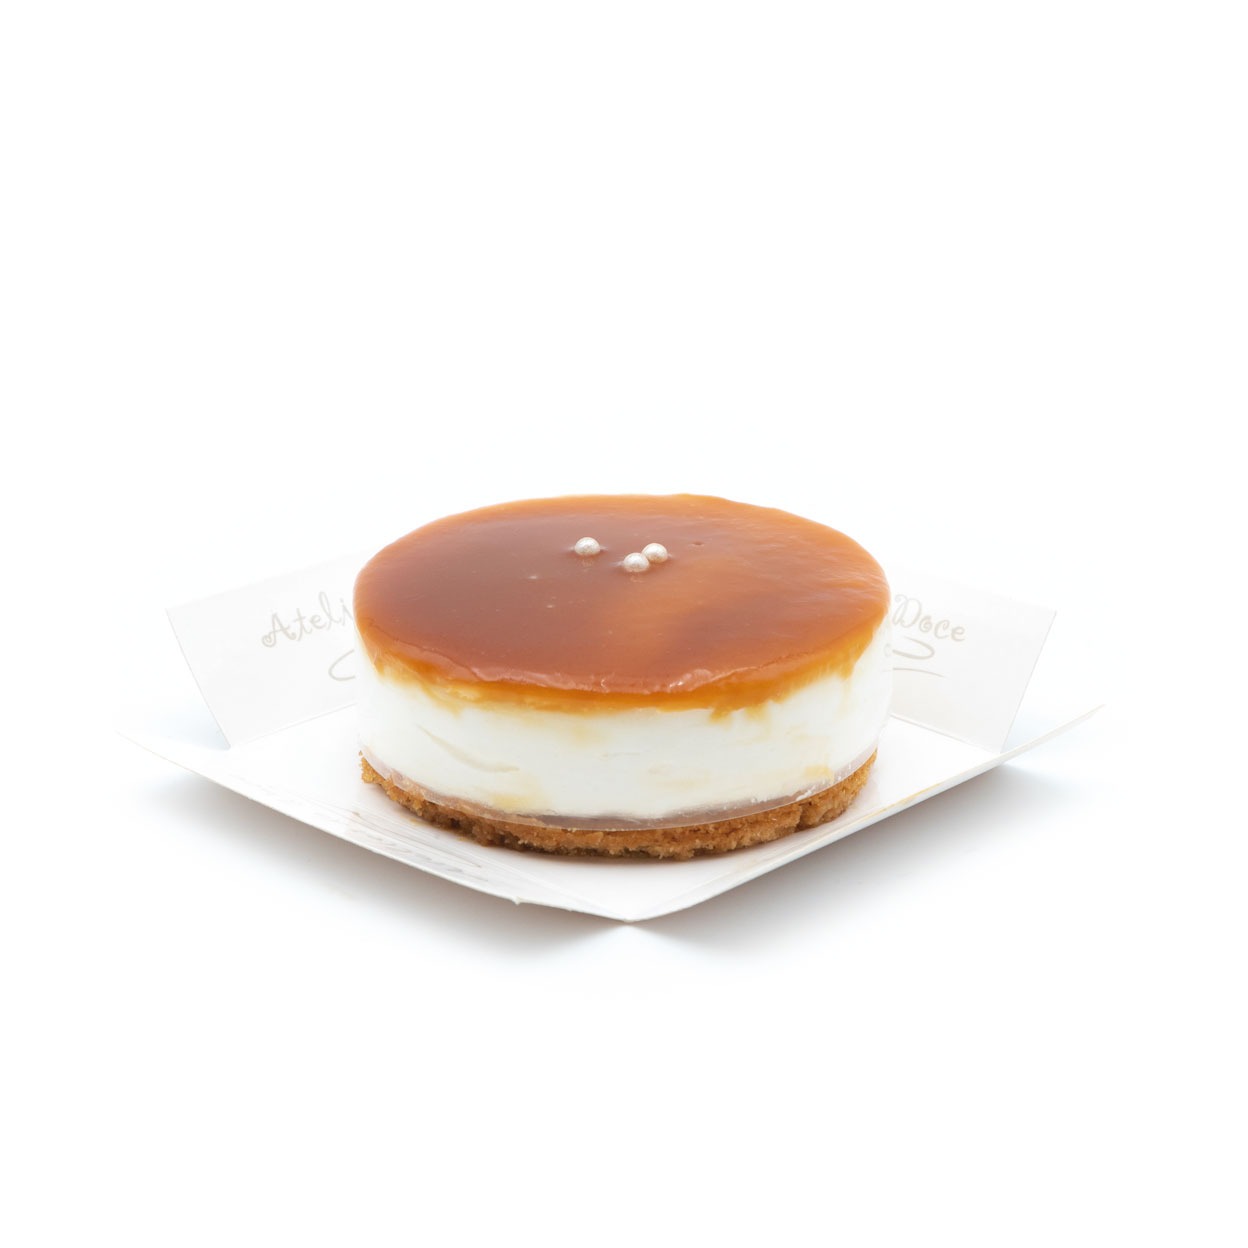 mini-cheesecake-caramelo-salgado-atelier-doce-alfeizerao-doces-conventuais